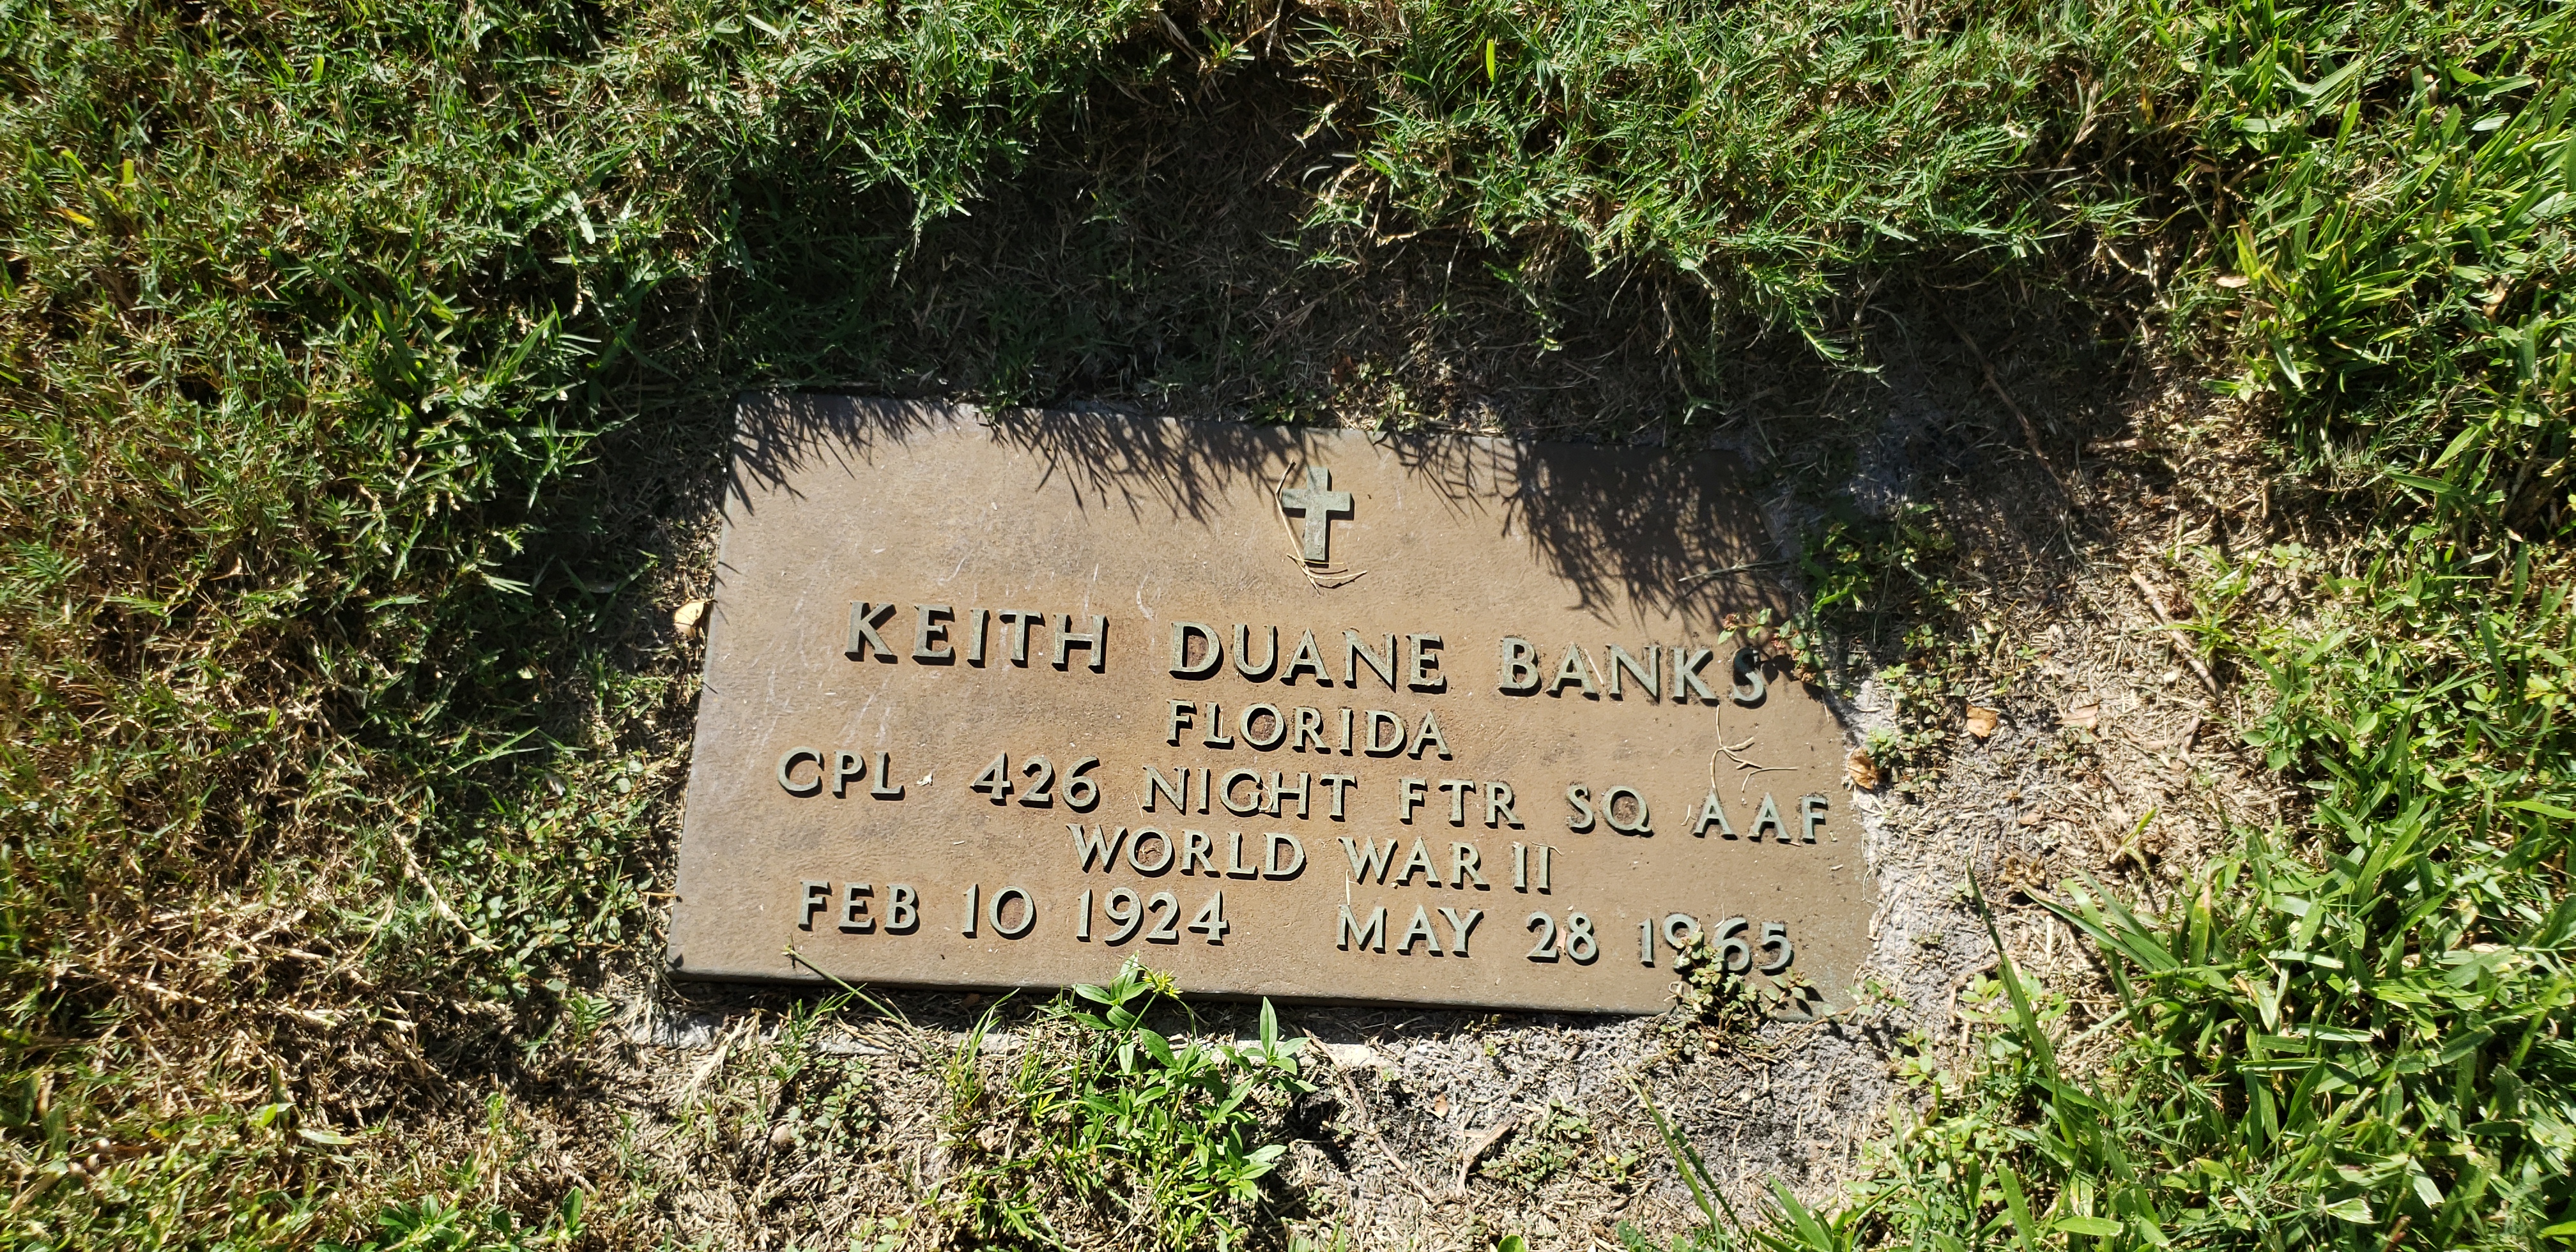 Keith Duane Banks